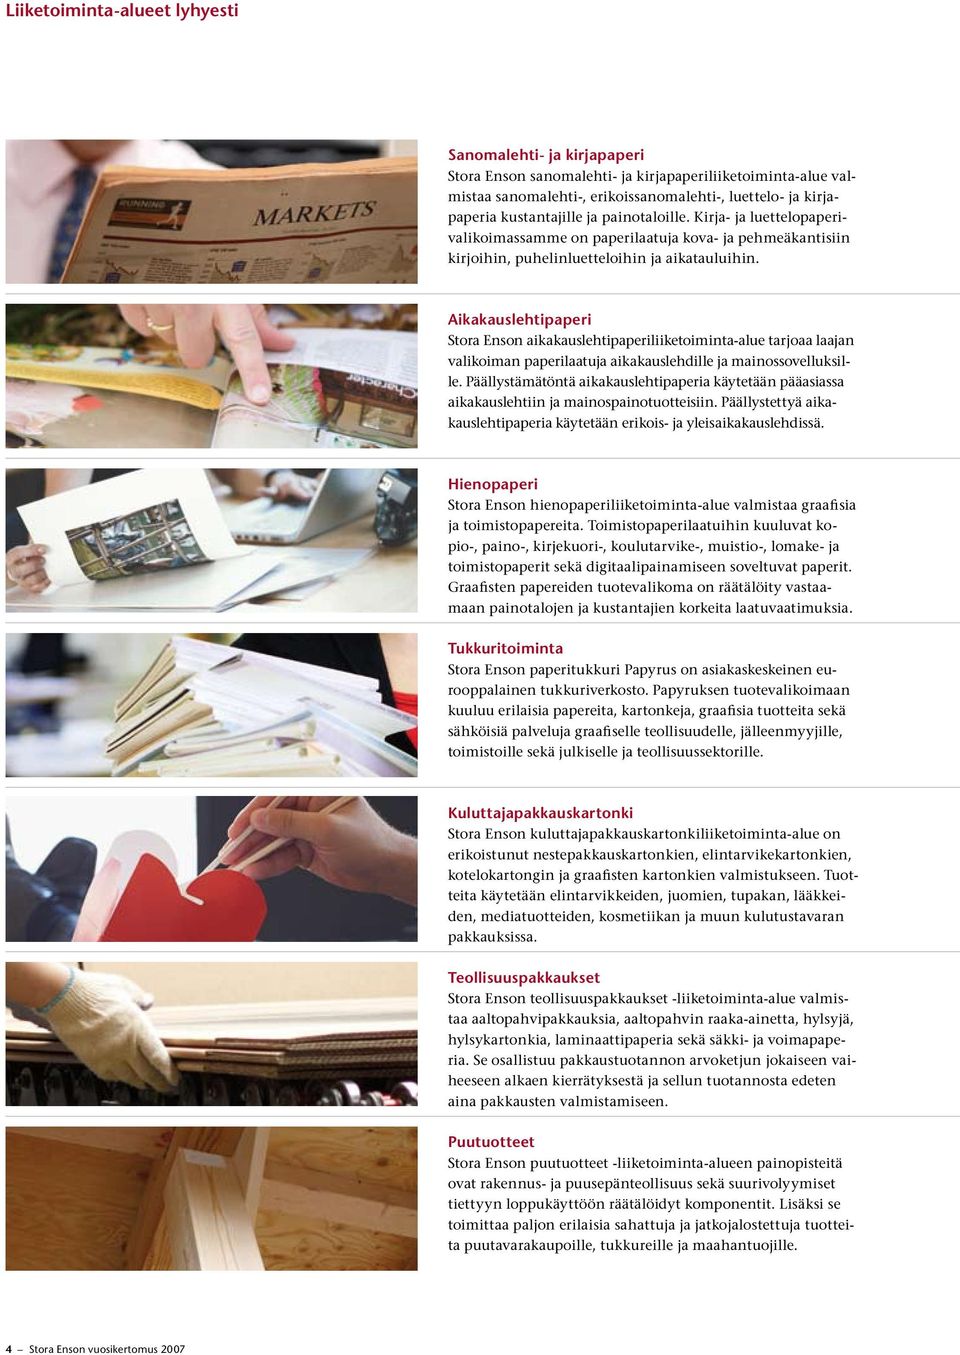 Aikakauslehtipaperi Stora Enson aikakauslehtipaperiliiketoiminta-alue tarjoaa laajan valikoiman paperilaatuja aikakauslehdille ja mainossovelluksille.